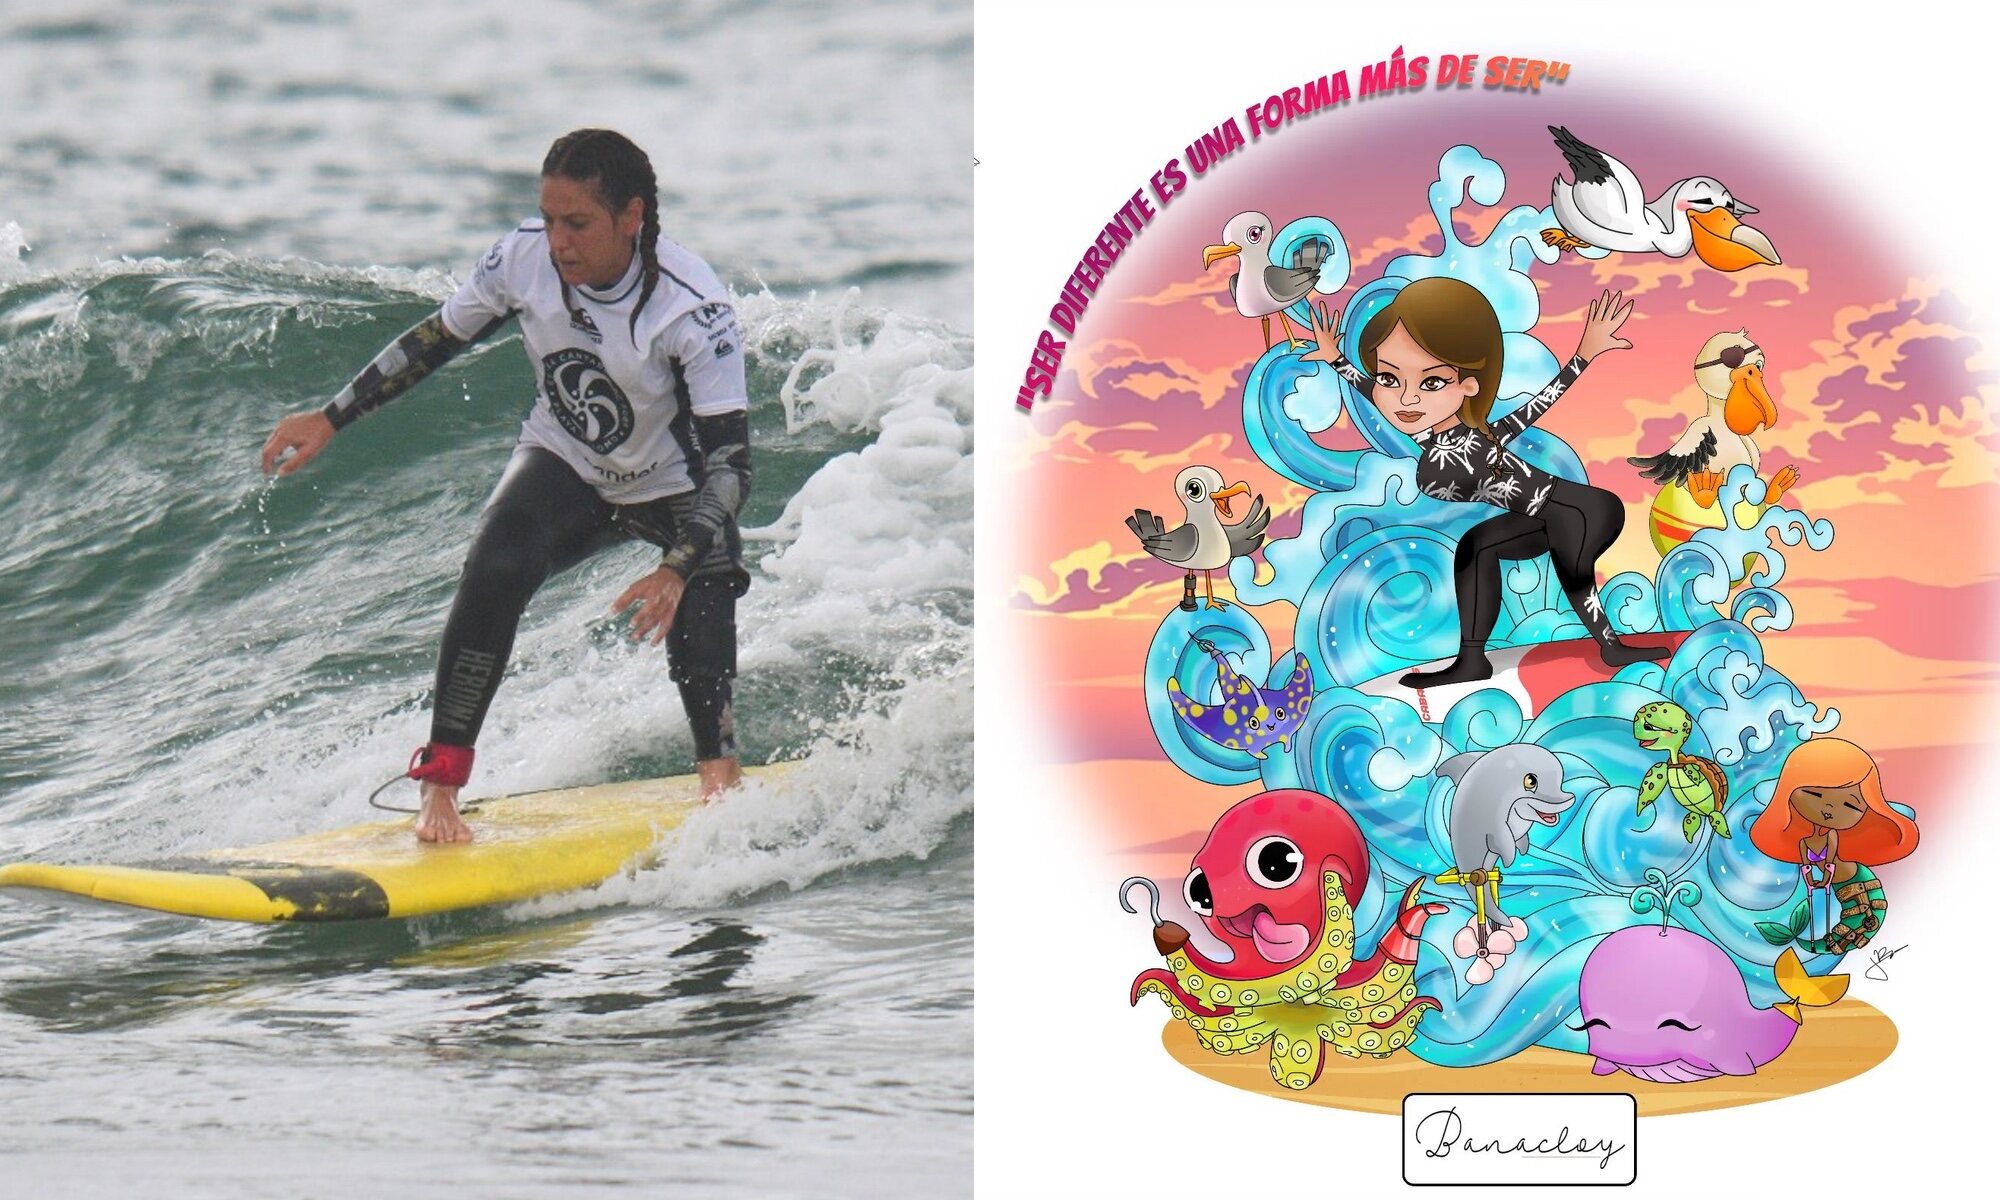 Mireia surfeando (FOTO: Landscapesinmotion) y boceto de la falla (De CrearT)